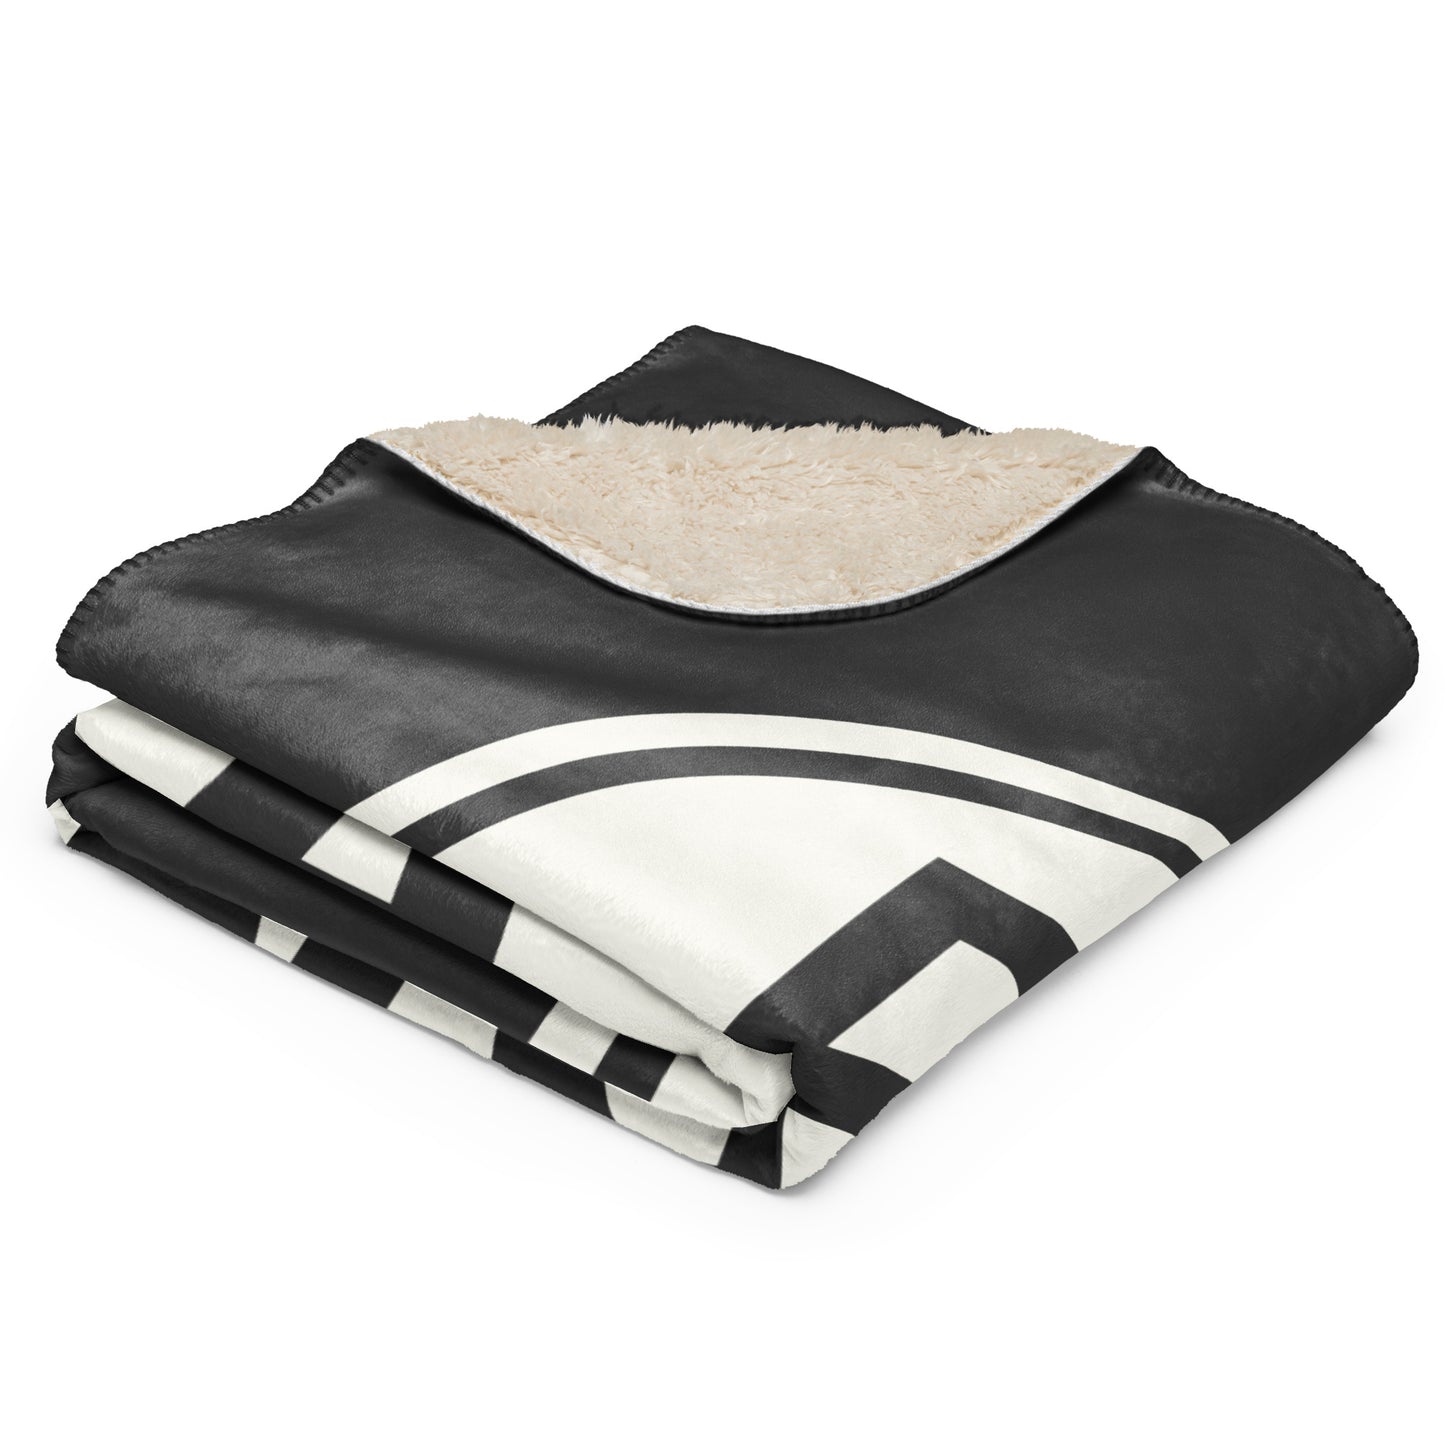 Unique Travel Gift Sherpa Blanket - White Oval • BNA Nashville • YHM Designs - Image 02